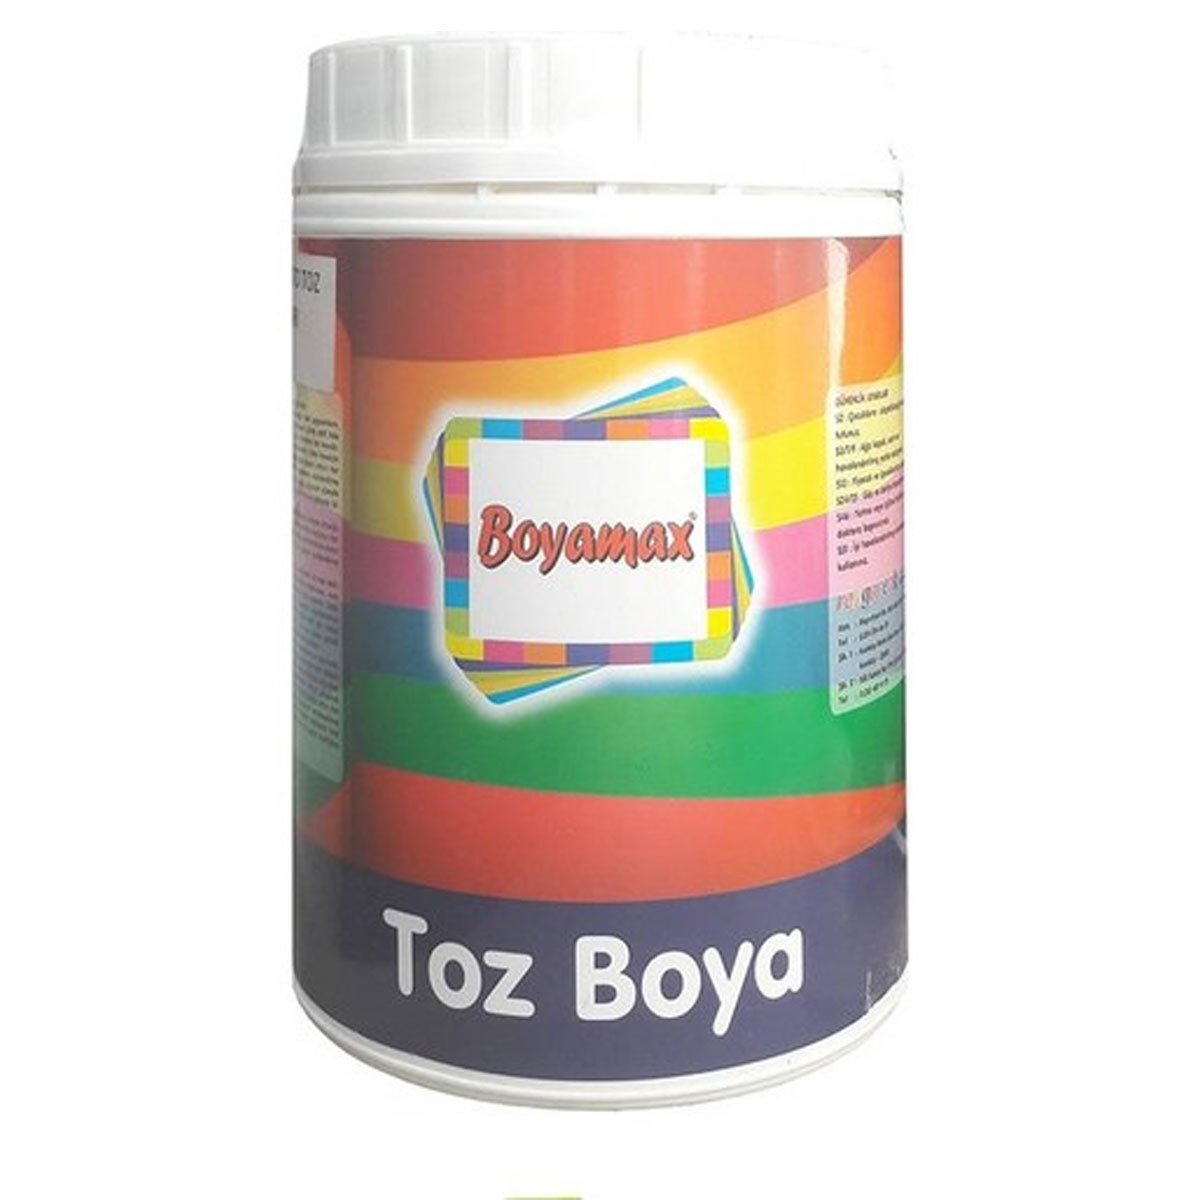 Boyamax Toz Boya 1kg